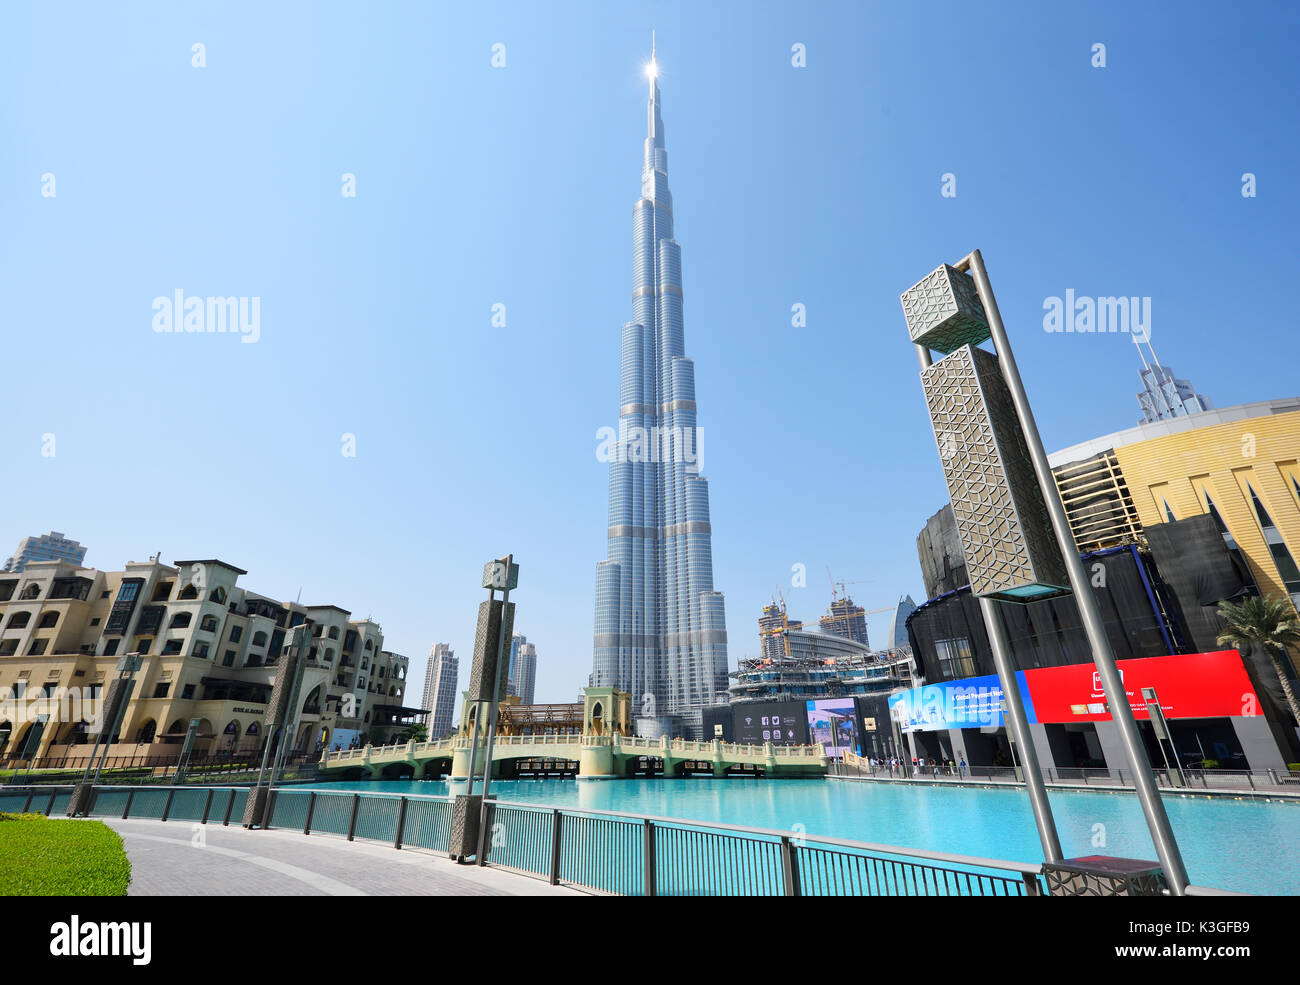 Dubai, Emiratos Árabes Unidos - Oct 7, 2016: el centro de Dubai con el Burj Khalifa torre. Este es el rascacielos más alto de la estructura hecha por el hombre en el mundo, Foto de stock